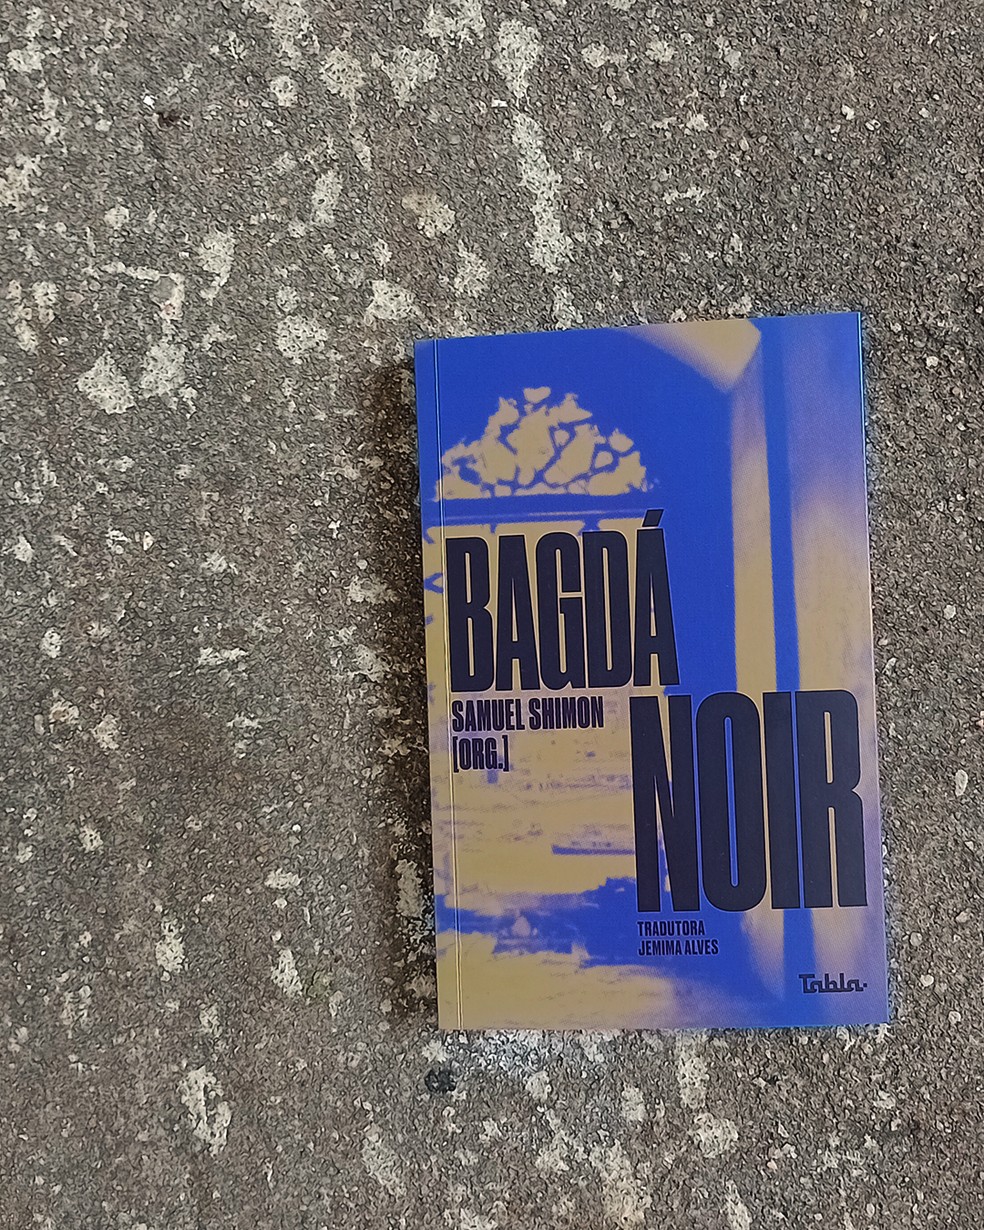 Bagdá Noir, editora Tabla — Foto: Divulgação/Editora Tabla